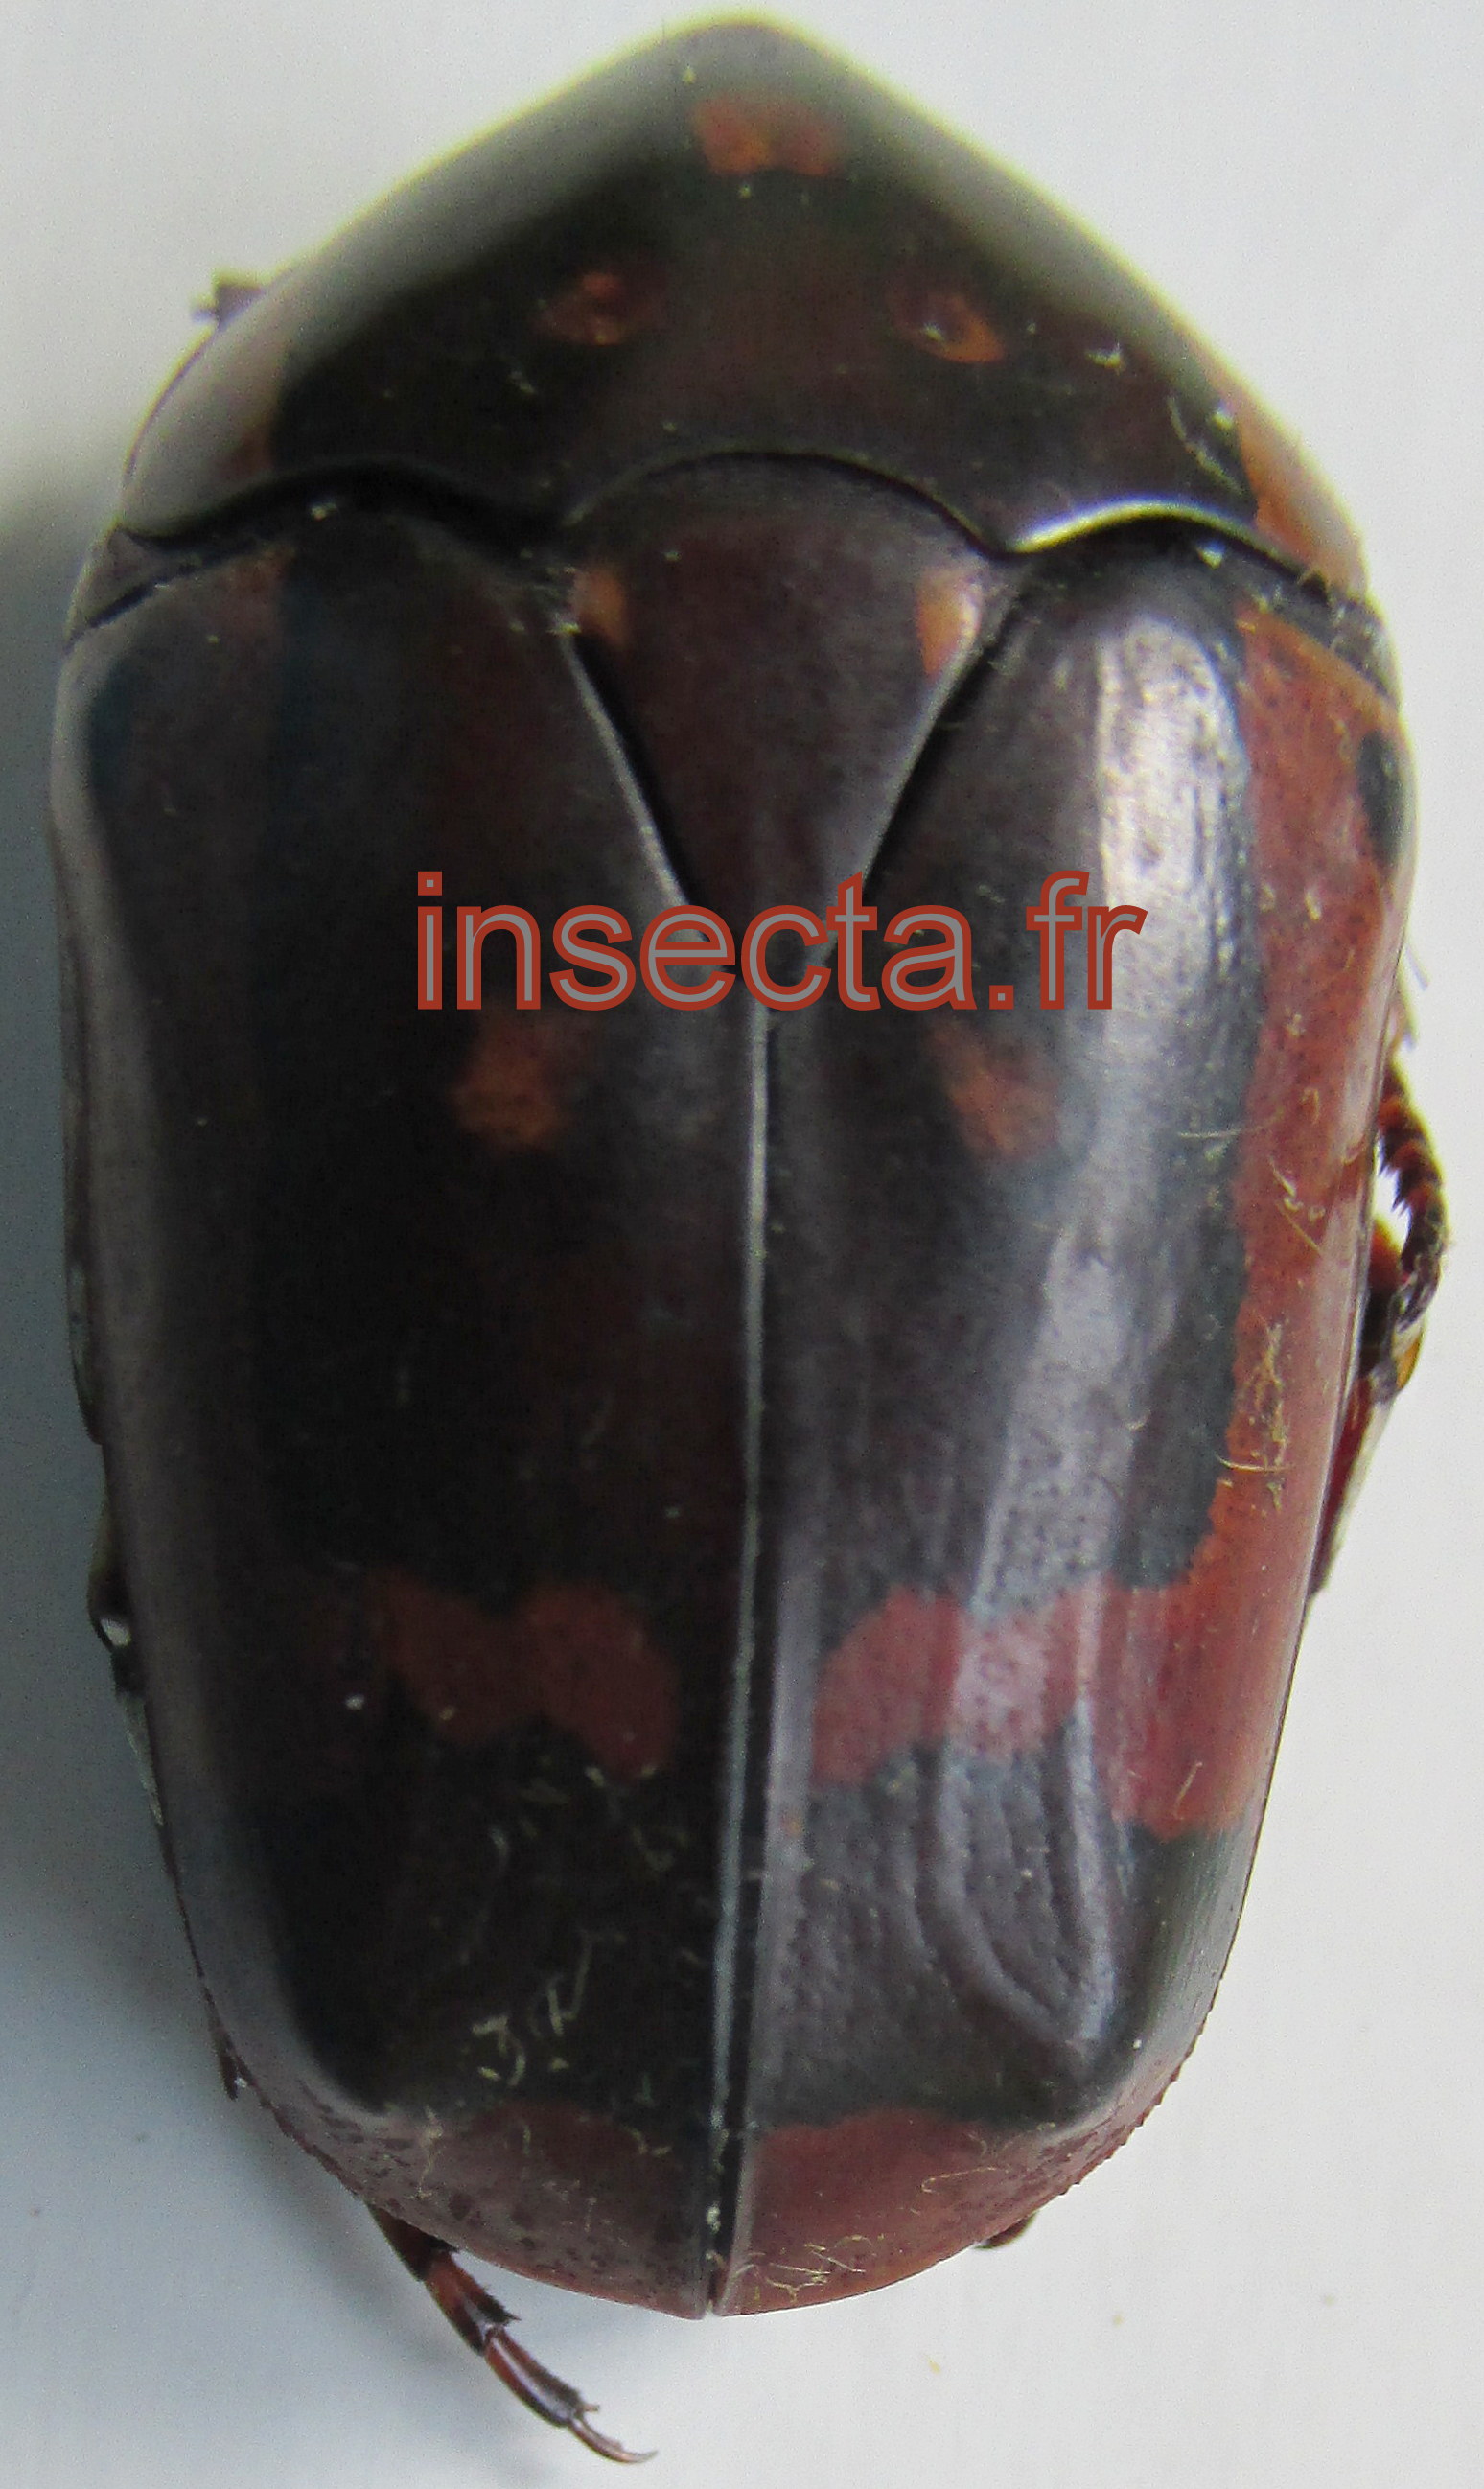 Pachnoda flaviventris fussipuncta hembra